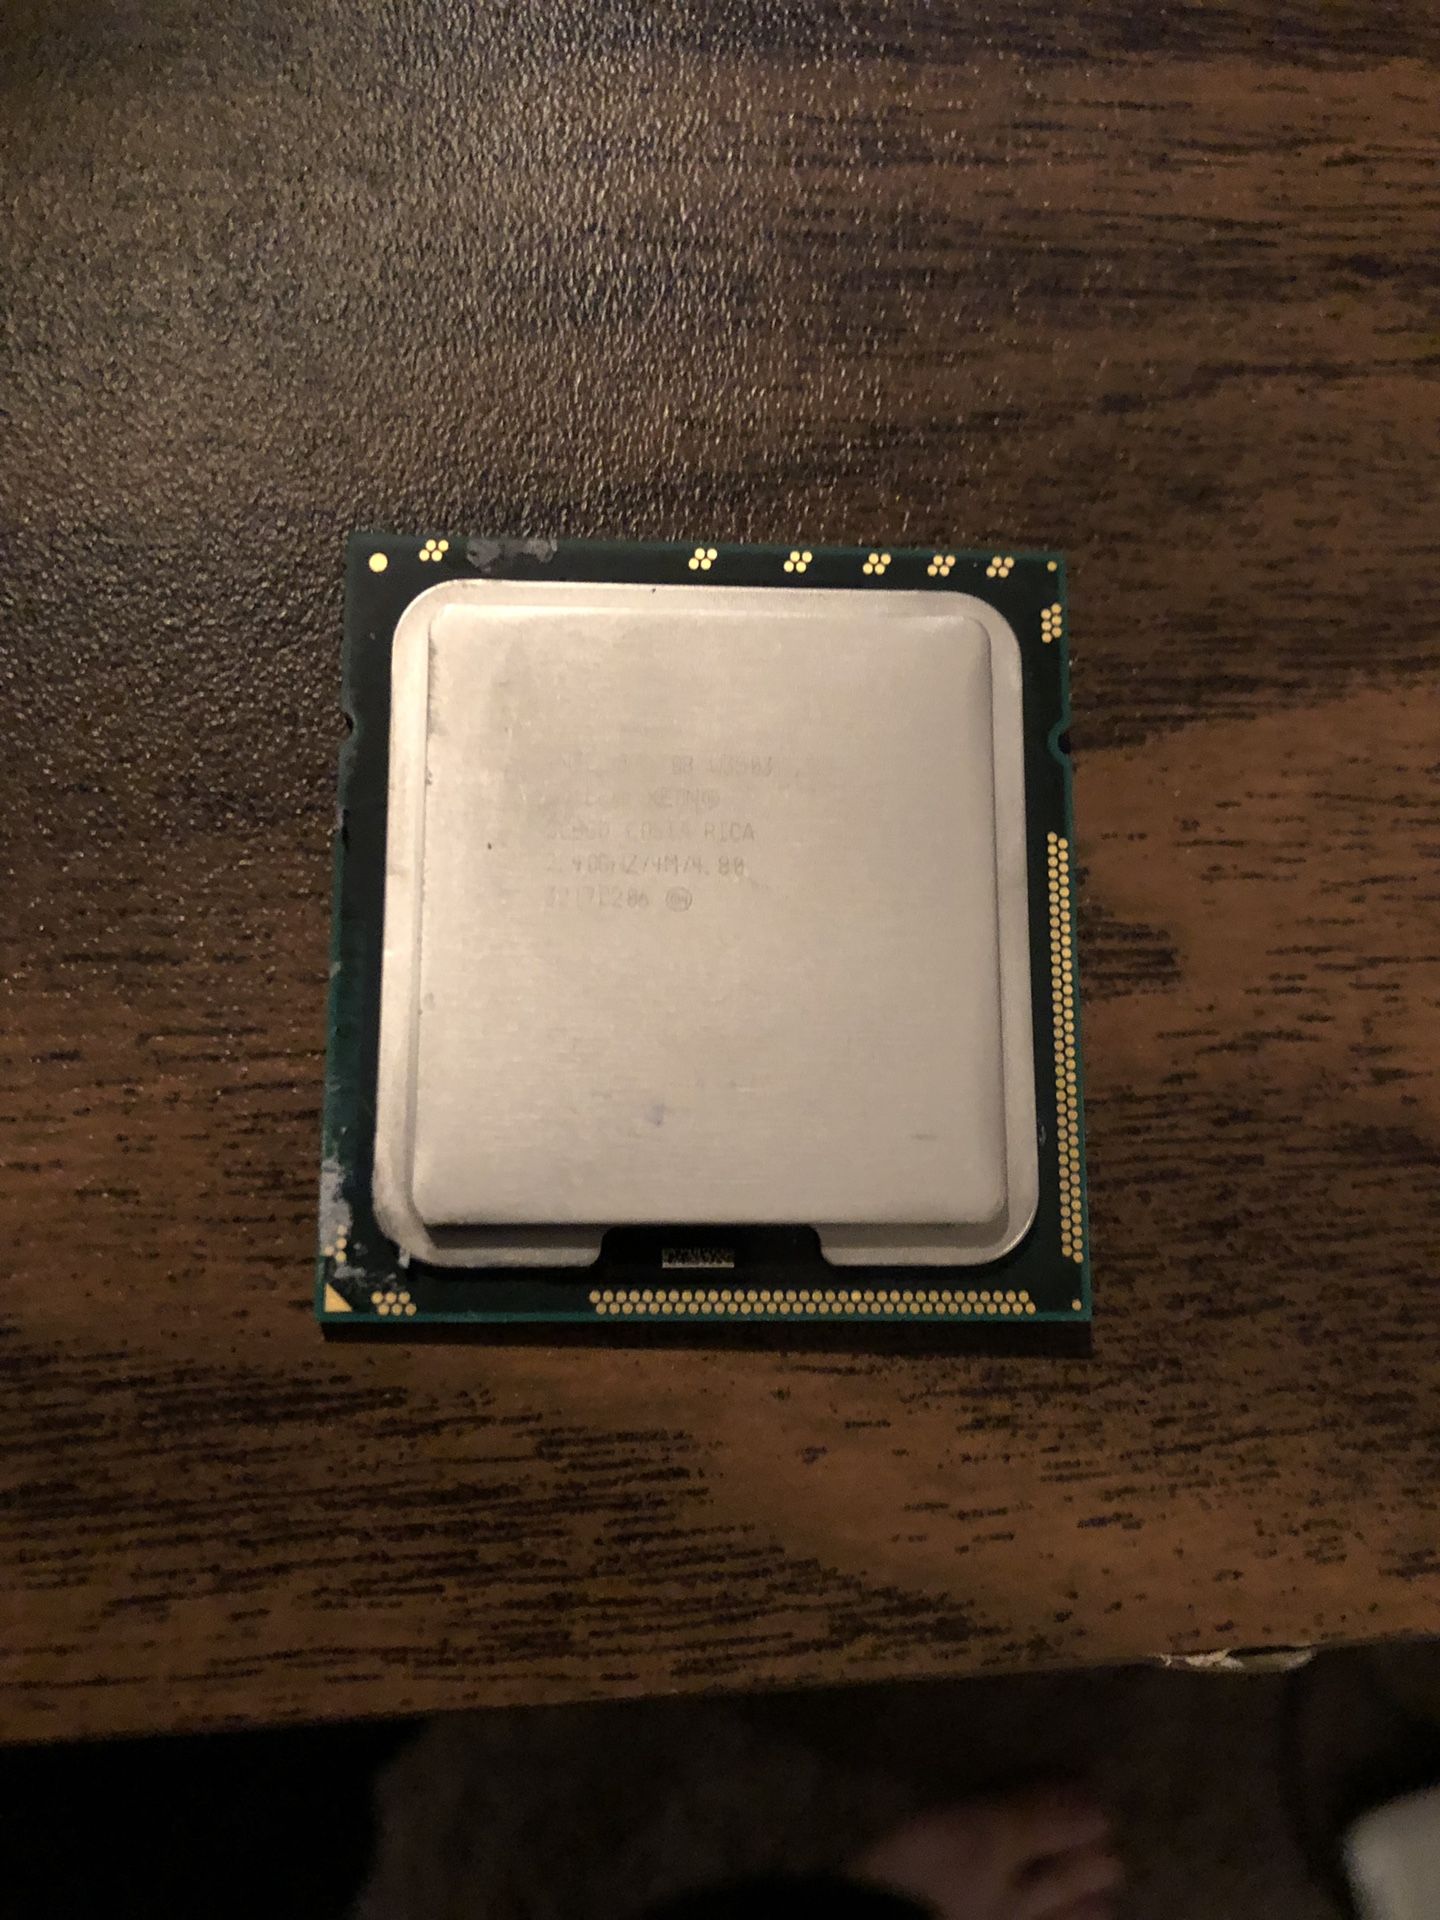 Inte Xeon 2.88GHz processor